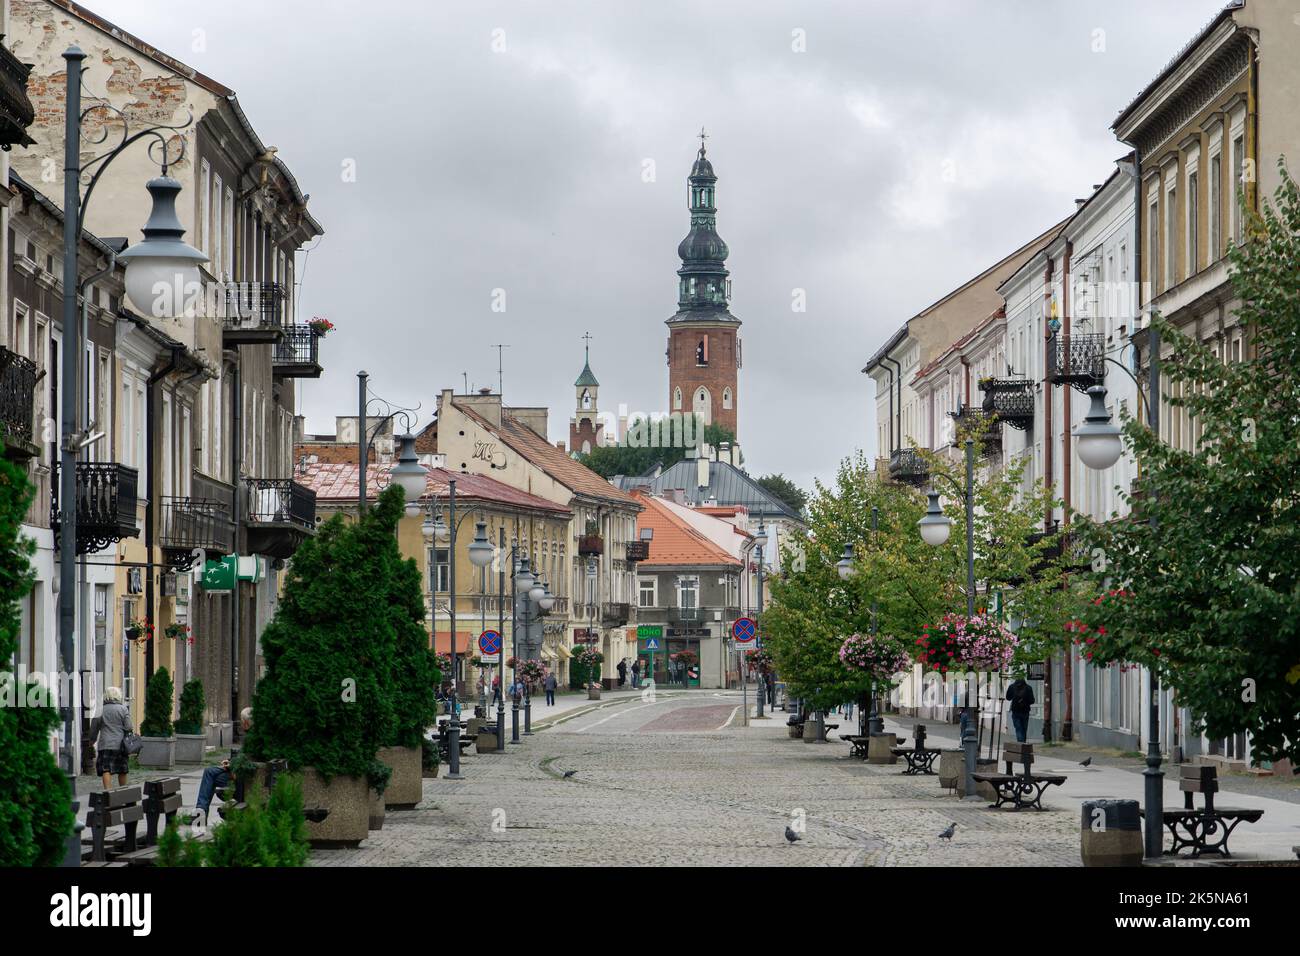 Zeromski Straße in Radom, Polen. Fußgängerzone im Stadtzentrum. Kirchturm von St. Jakob im Hintergrund Stockfoto